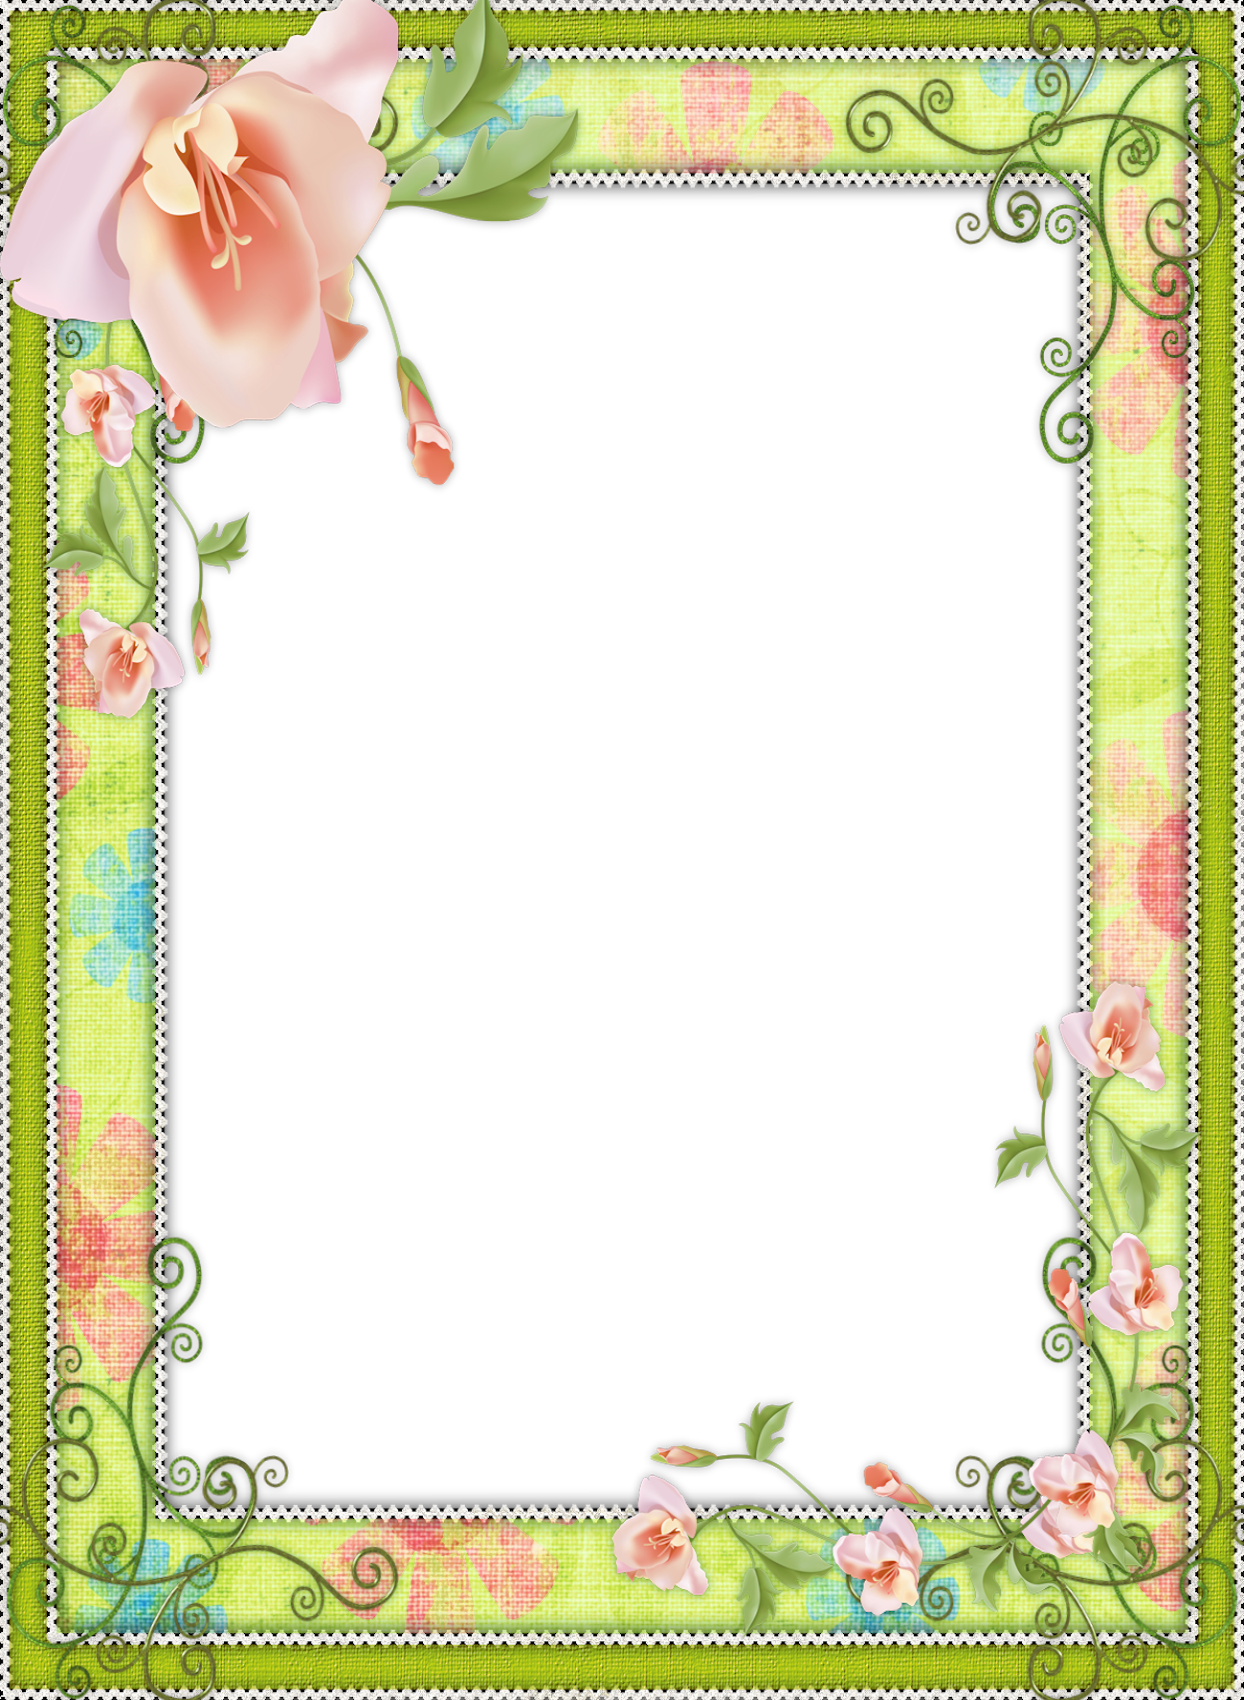 Flower clipart frame, Flower frame Transparent FREE for download on ...